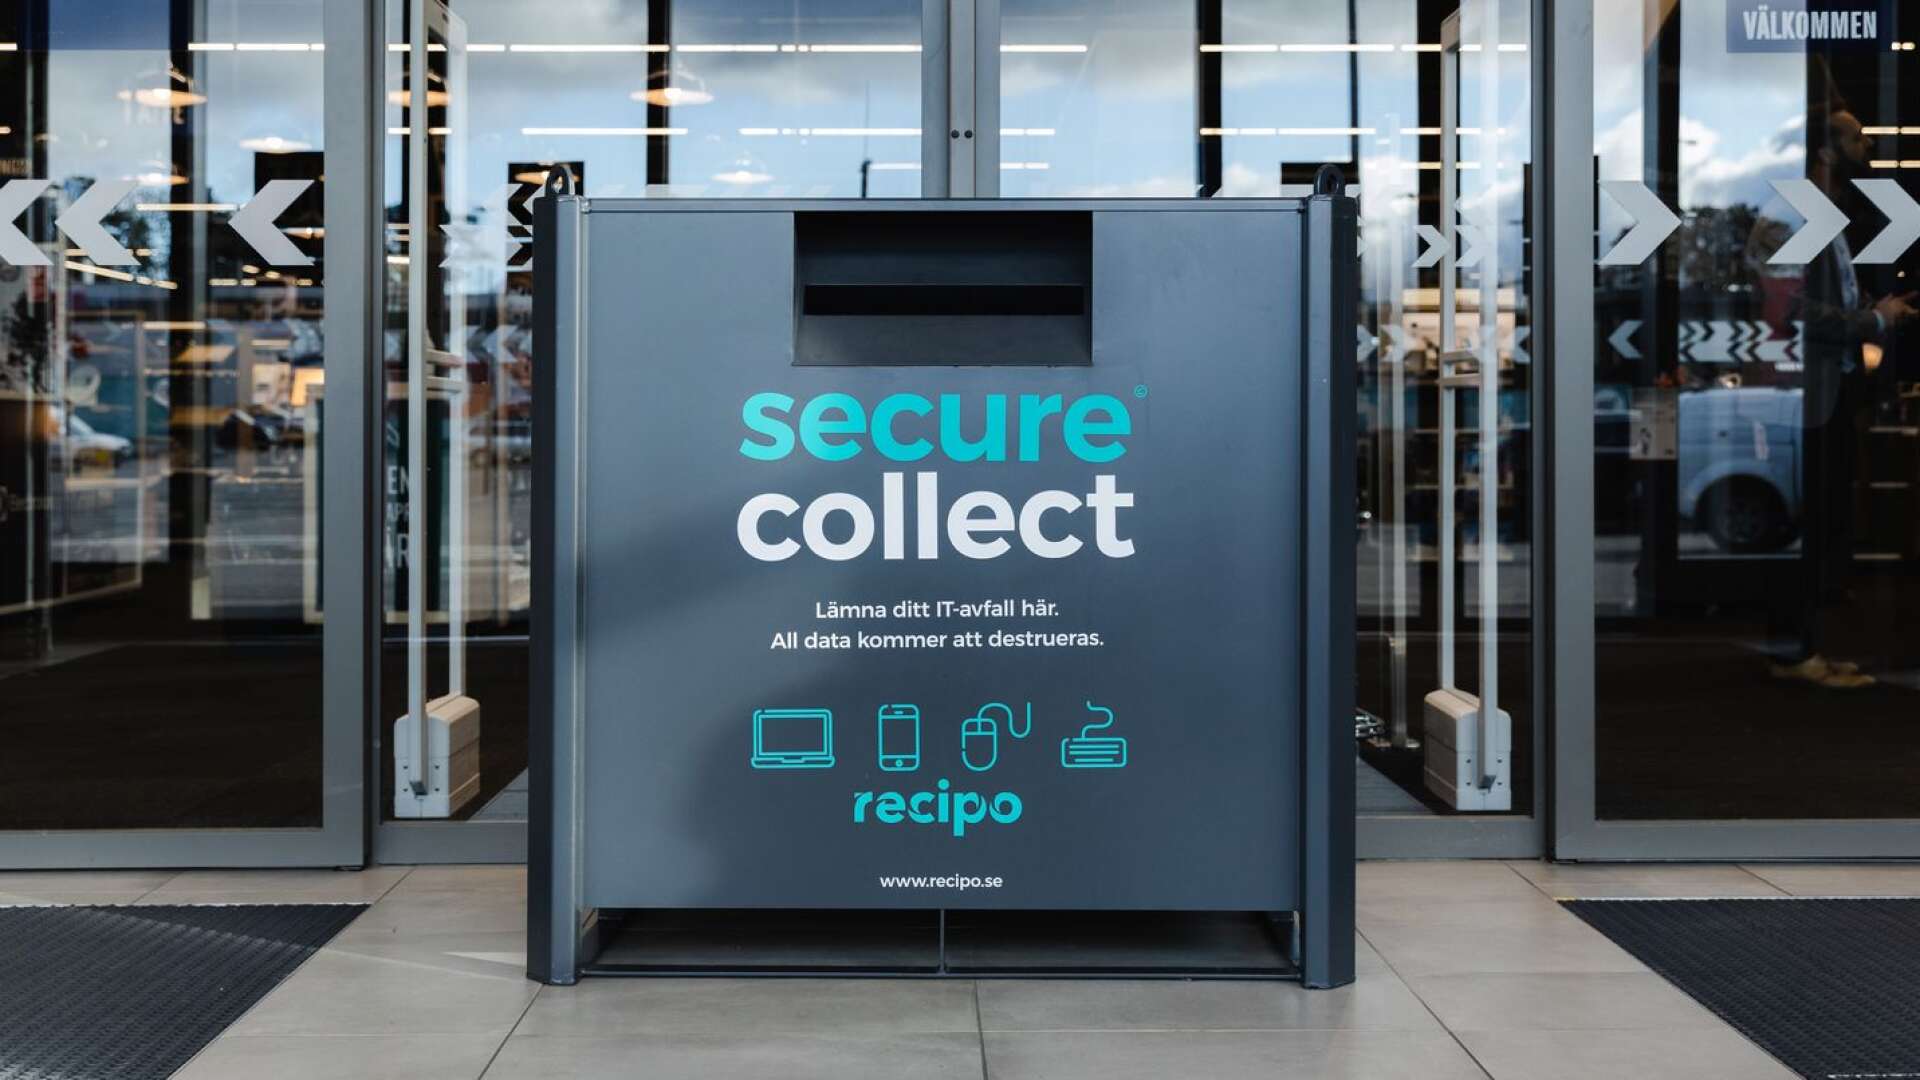 Elgiganten har infört Secure Collect-lådor för att samla in kasserad hemelektronik, berättar debattören.